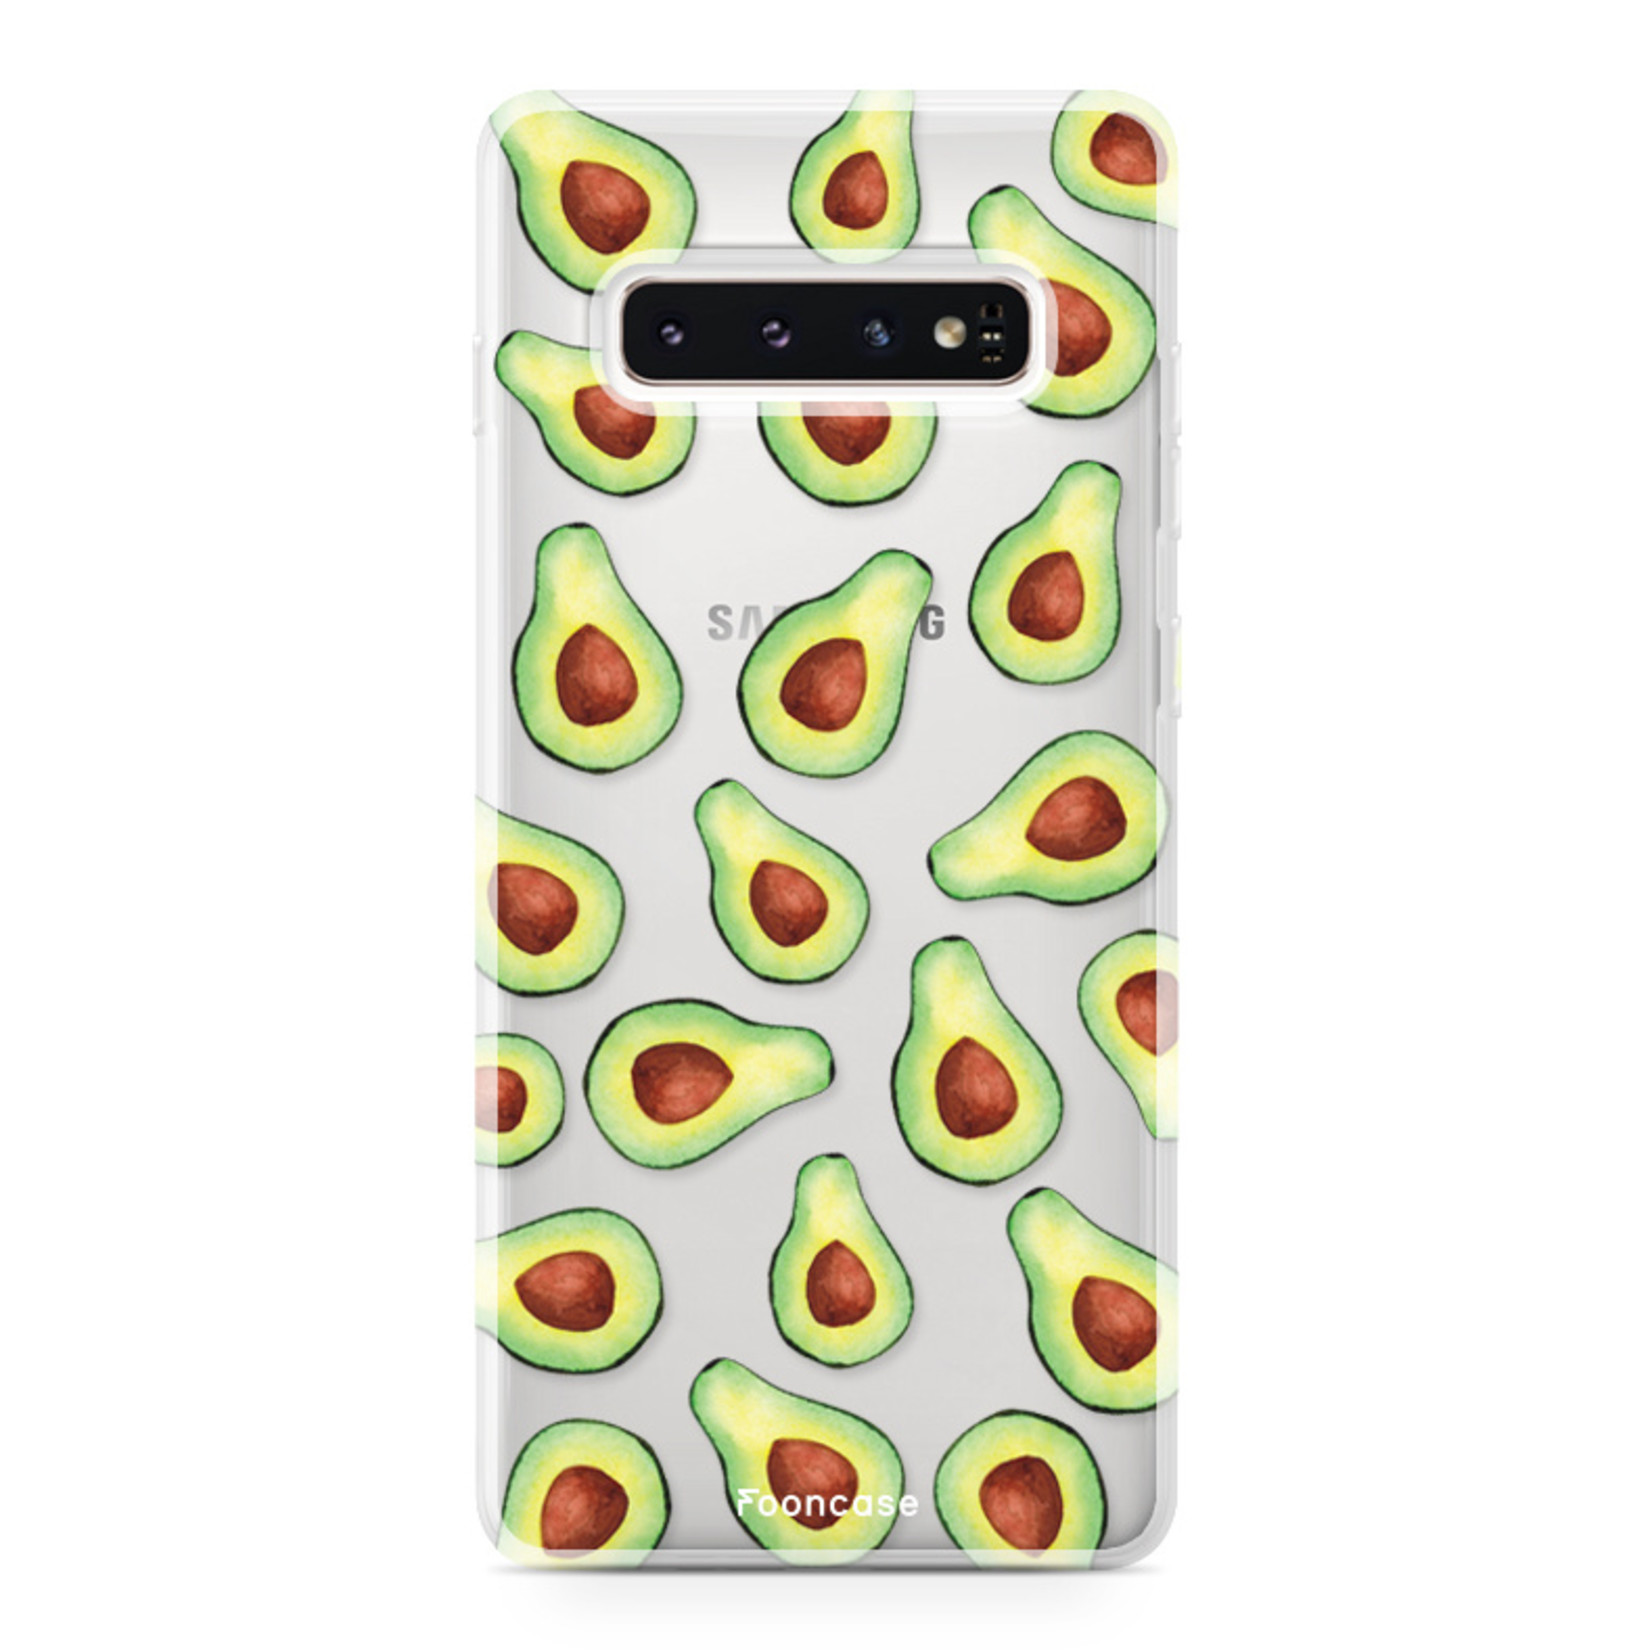 FOONCASE Samsung Galaxy S10 Plus Cover - Avocado